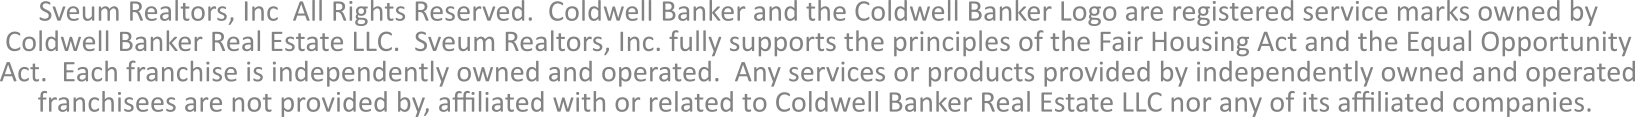 Coldwell Banker Real Estate Group Website Disclaimer